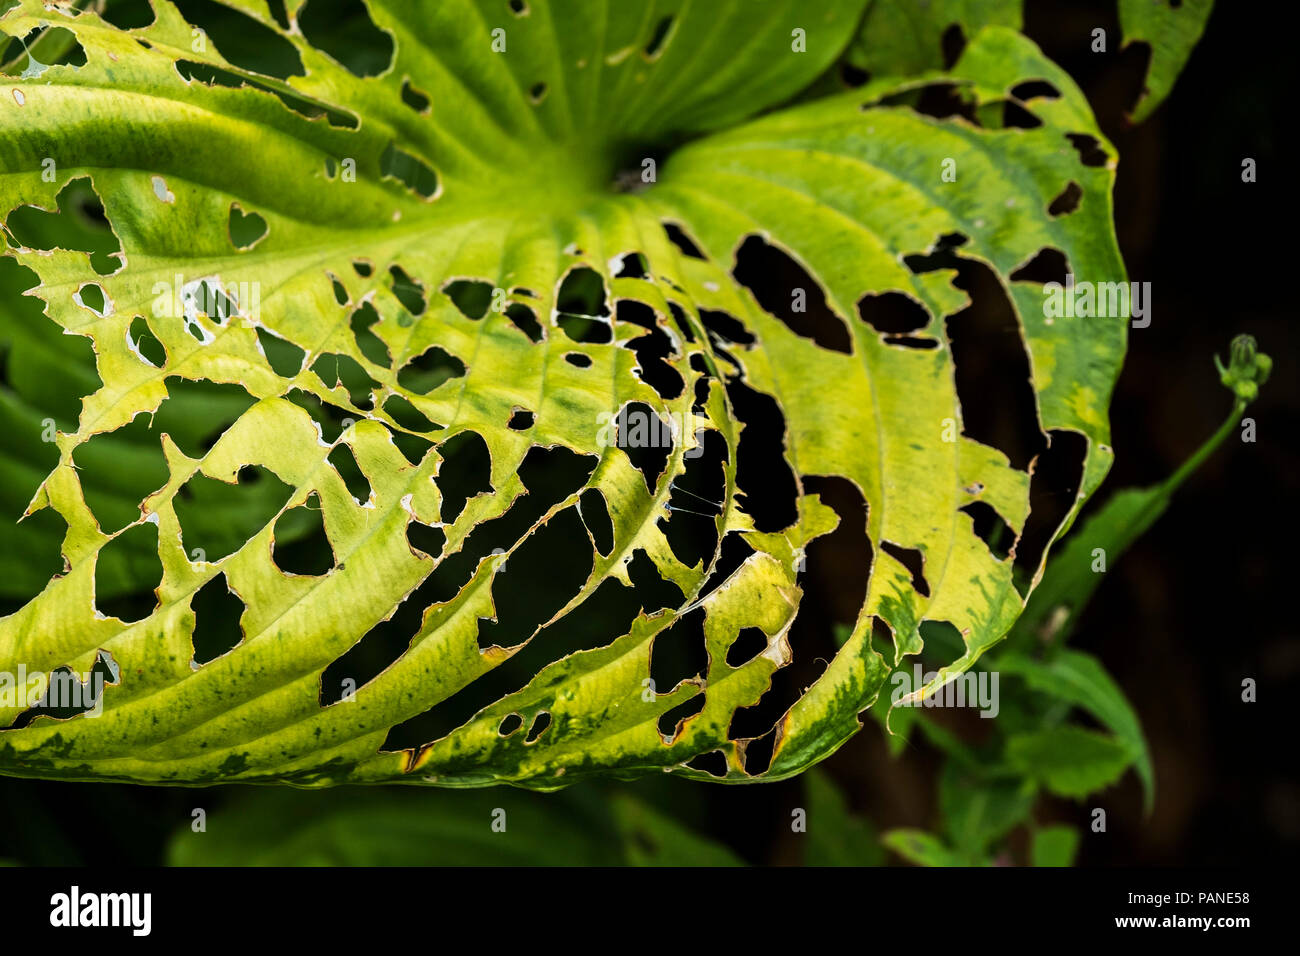 Babosa de insectos plaga daños en las hojas de una planta Hosta. Foto de stock